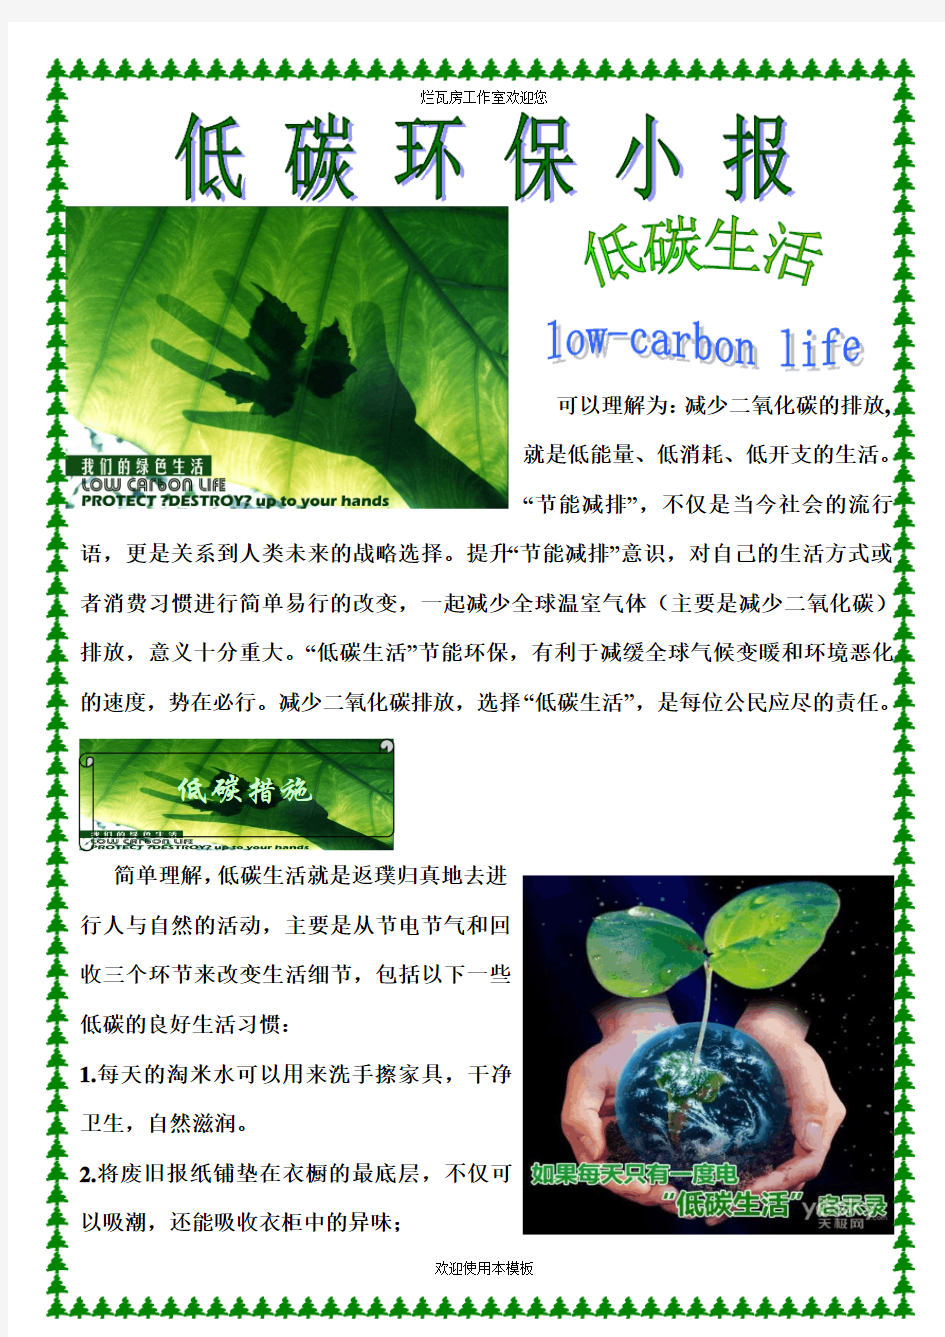 保护环境电子小报 (1)